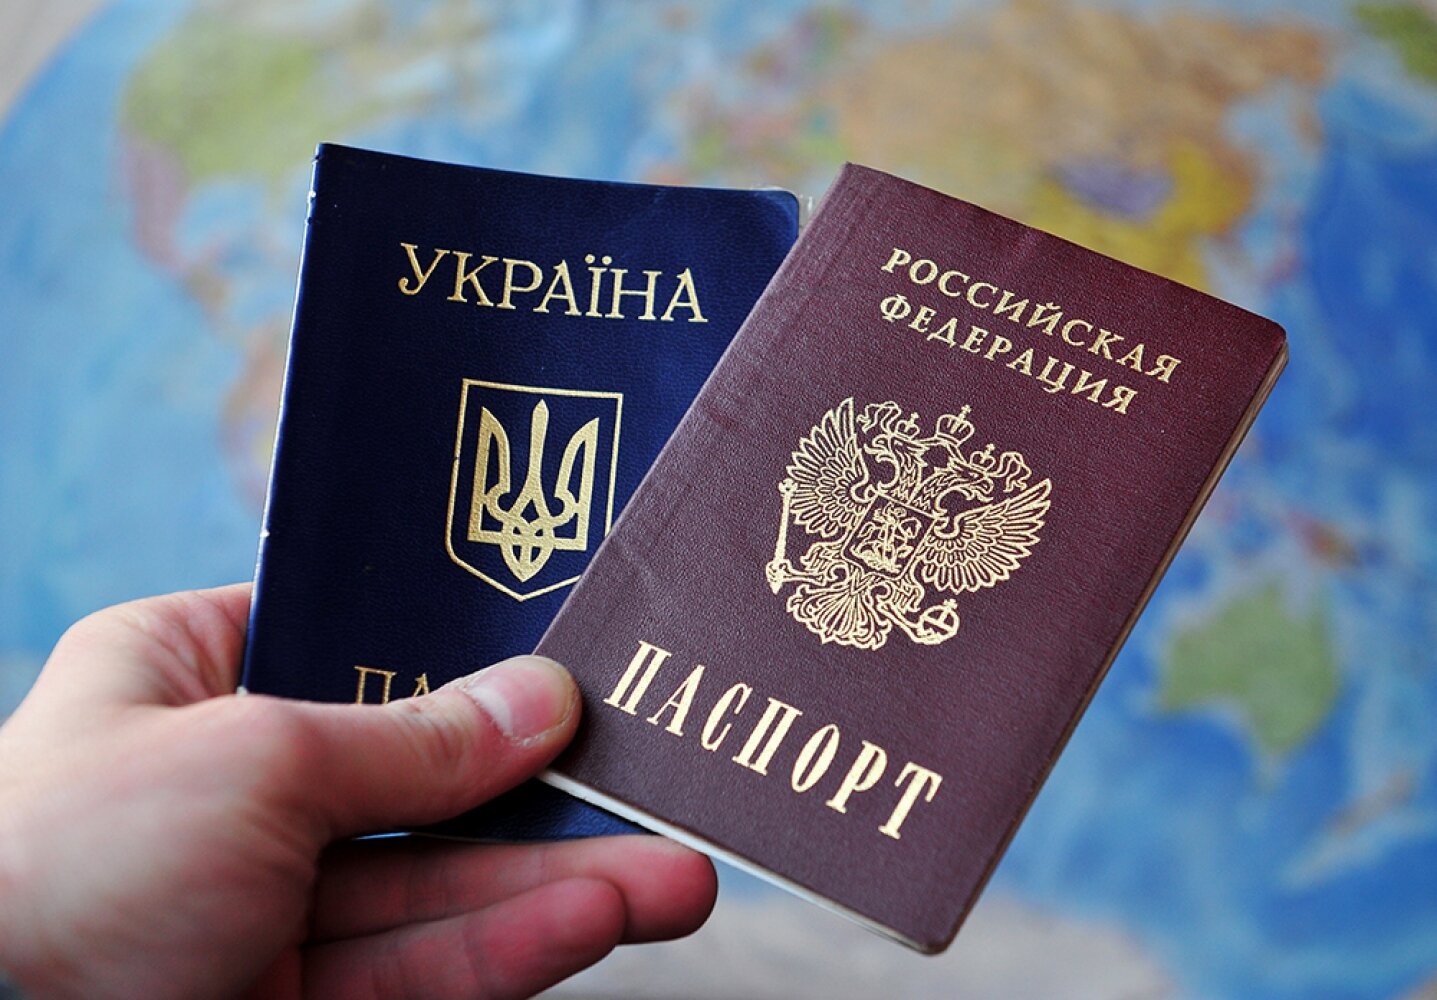 Украинцев с паспортом РФ хотят ограничить в правах